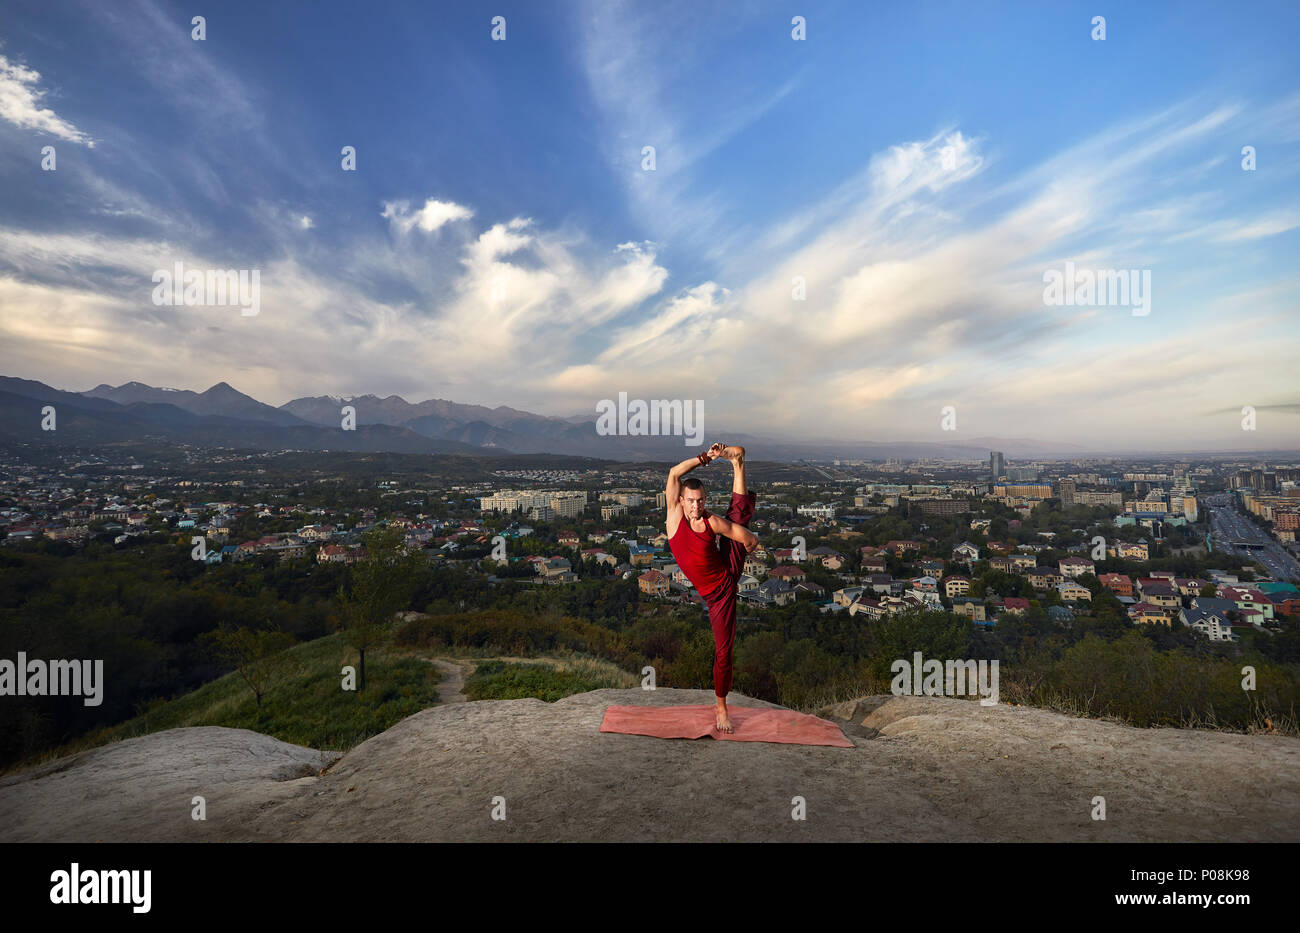 Passen Mann im roten Kostüm Yoga balance Asana im Park mit die Stadt und die Berge im Hintergrund in Almaty, Kasachstan Stockfoto